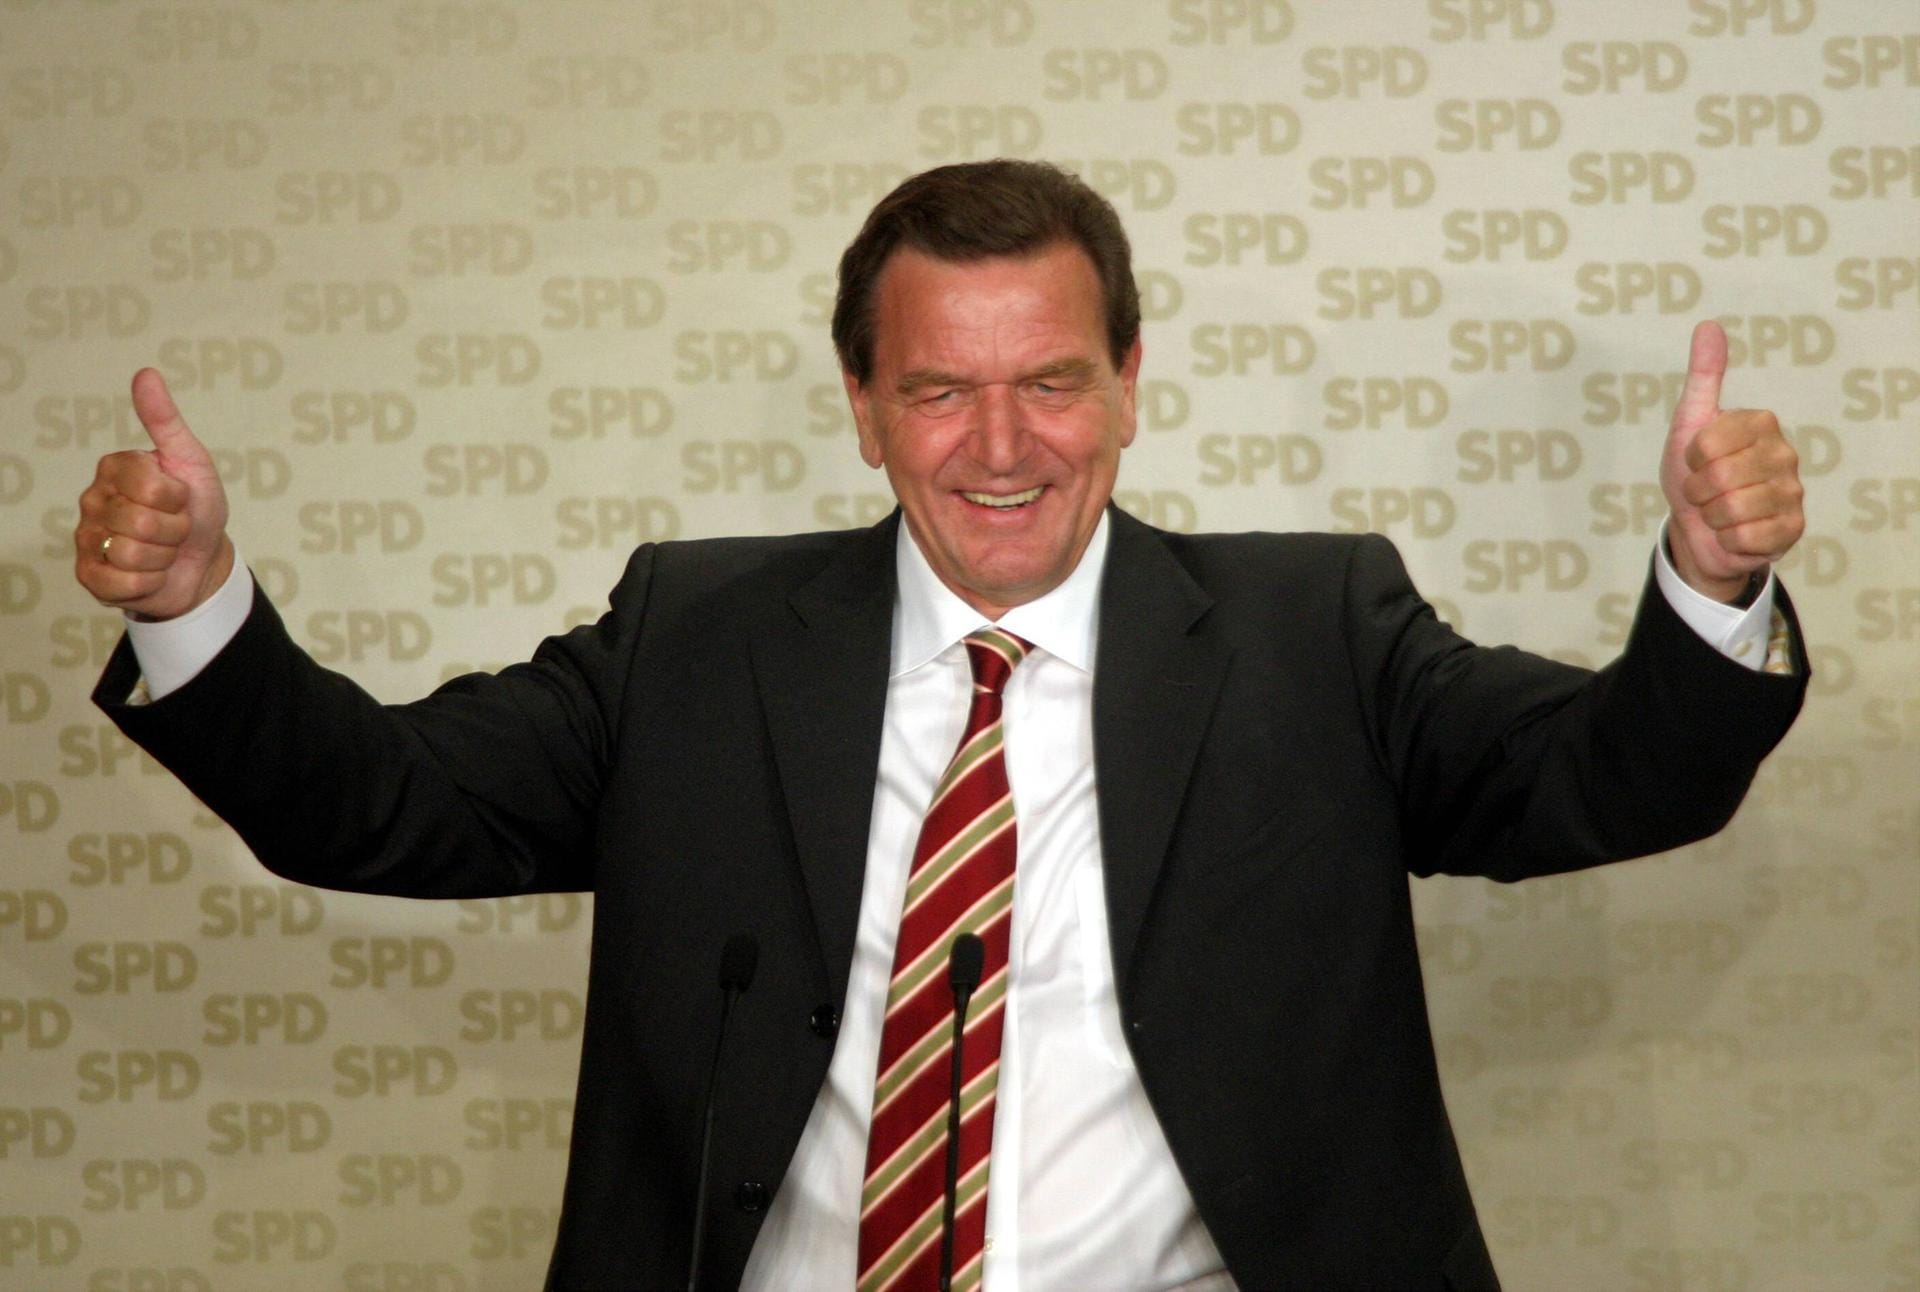 1998 bis 2005: Gerhard Schröder wird in einer Koalition mit den Grünen zum dritten SPD-Kanzler gewählt. Die Einführung von Hartz IV und die erstmalige Beteiligung der Bundeswehr an Kampfeinsätzen im Ausland bestimmen seine Amtszeit.